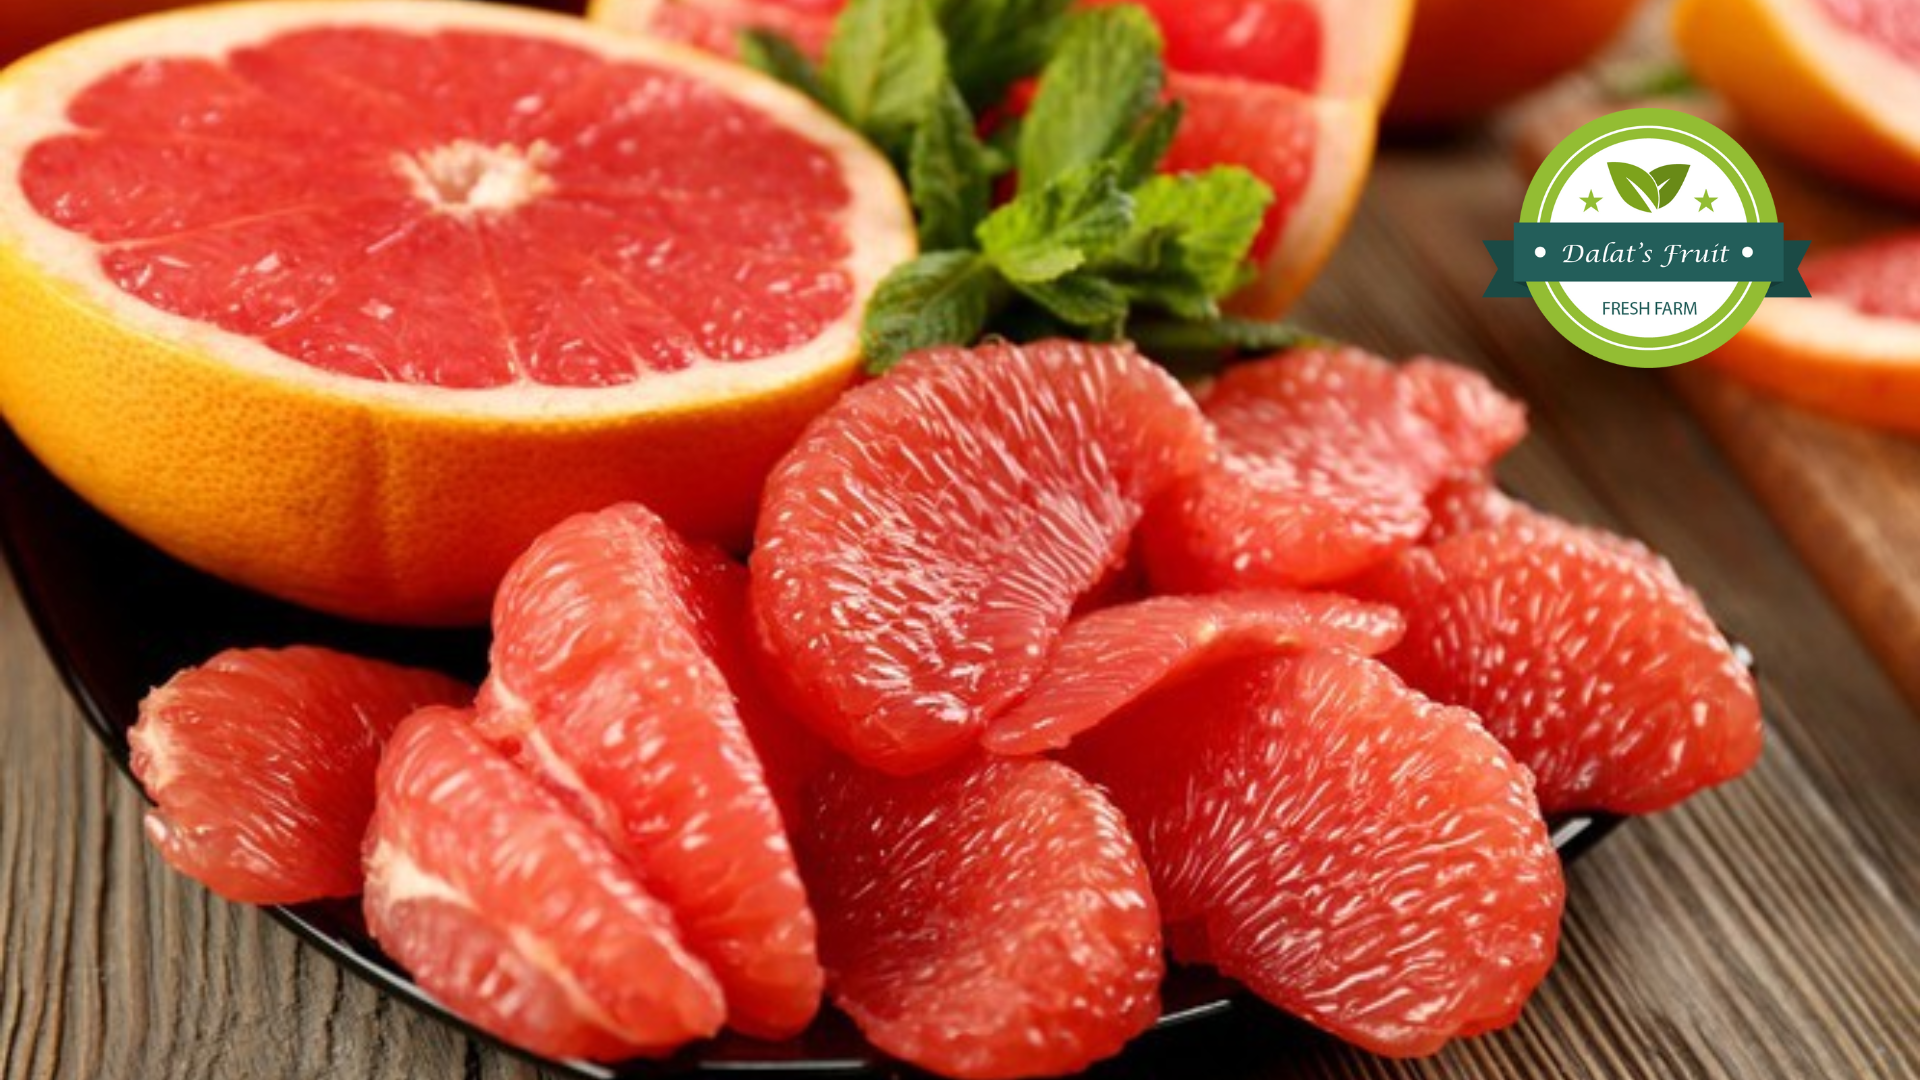 Bưởi là loại trái cây đứng top đầu trong những quả có nhiều vitamin C có lợi cho sức khỏe